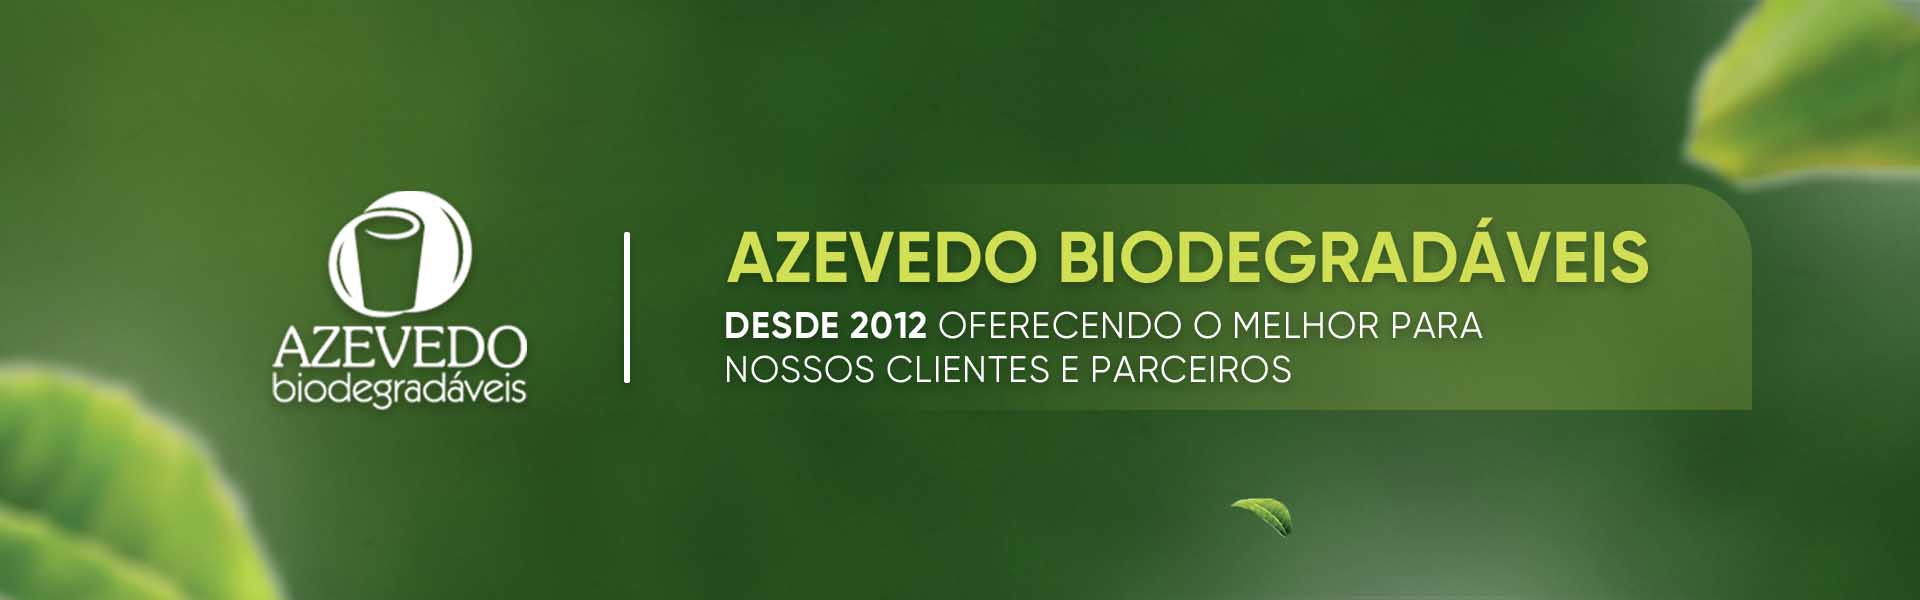 Azevedo Biodegradáveis - banner